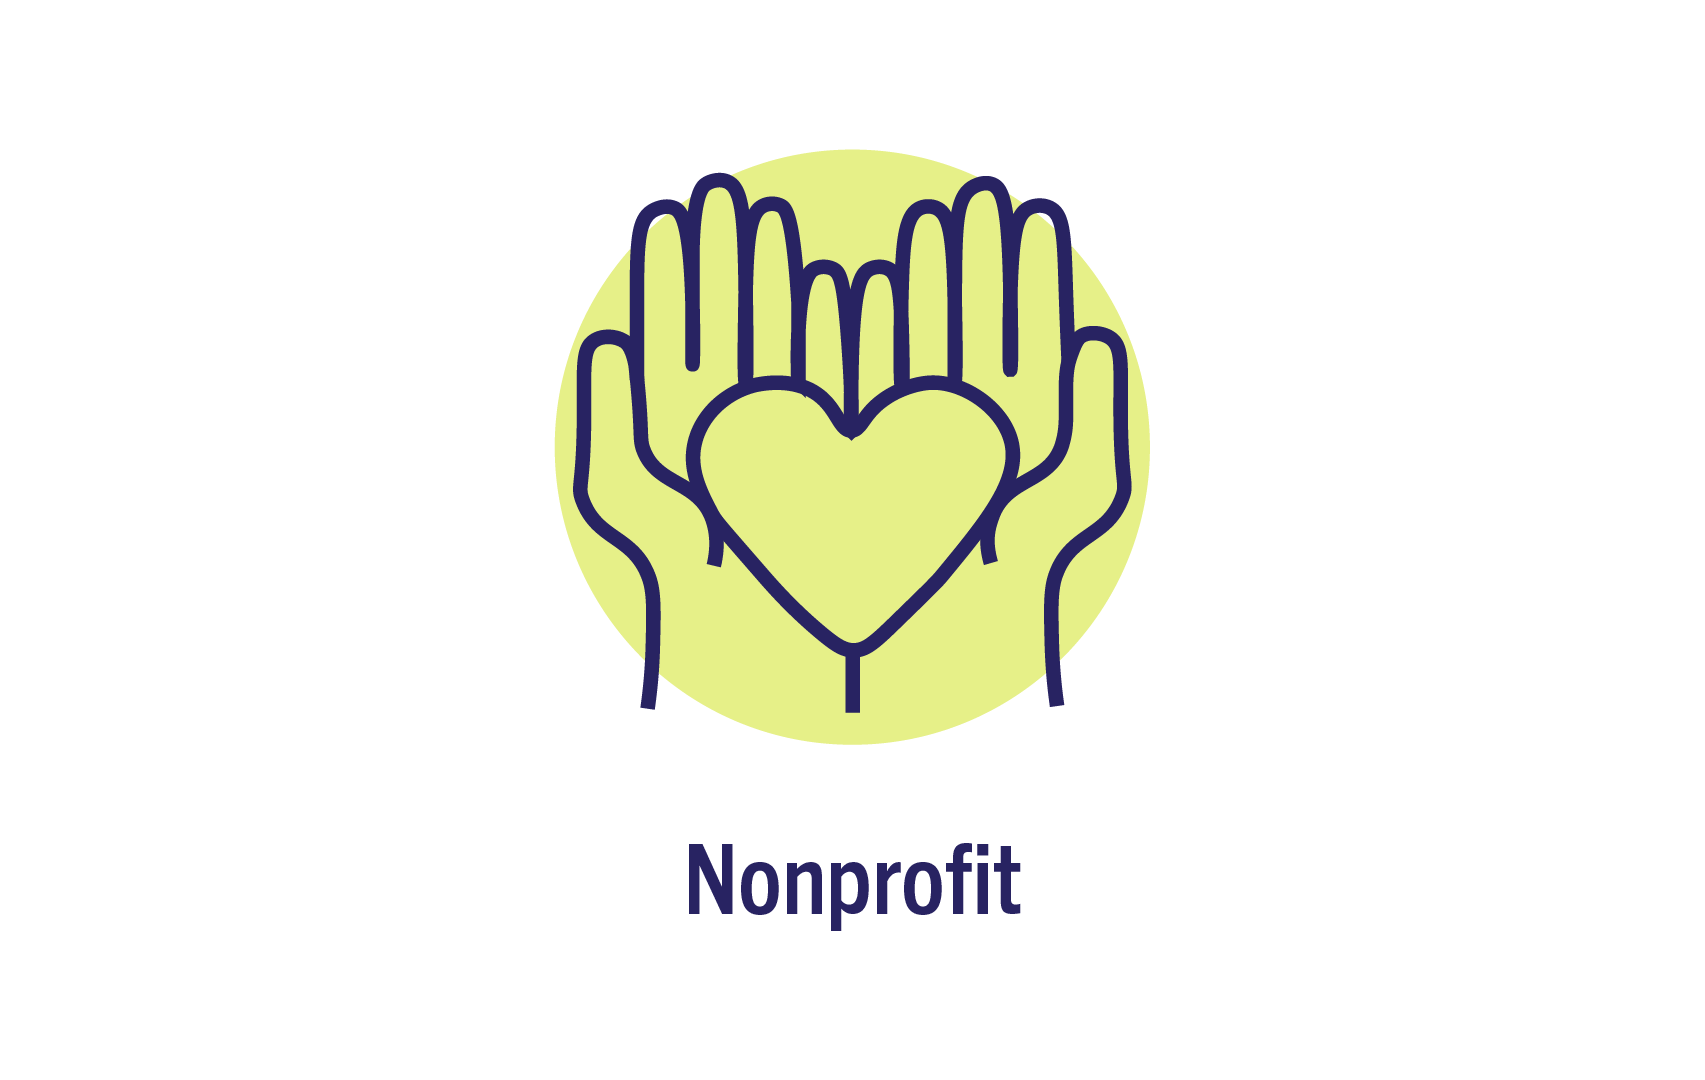 nonprofit